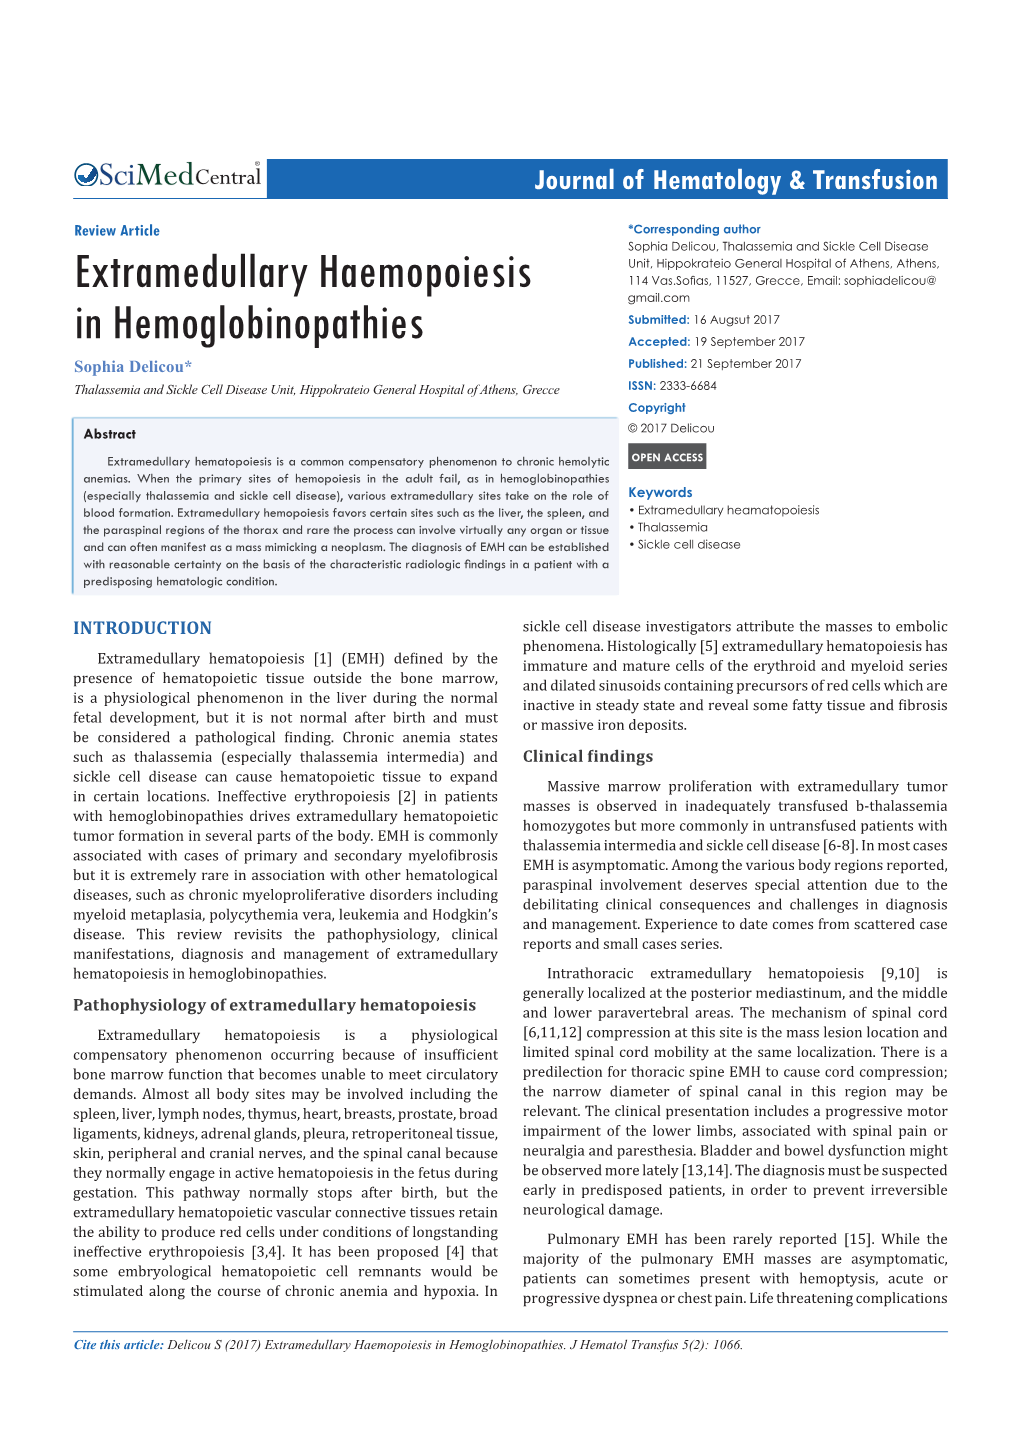 Extramedullary Haemopoiesis in Hemoglobinopathies